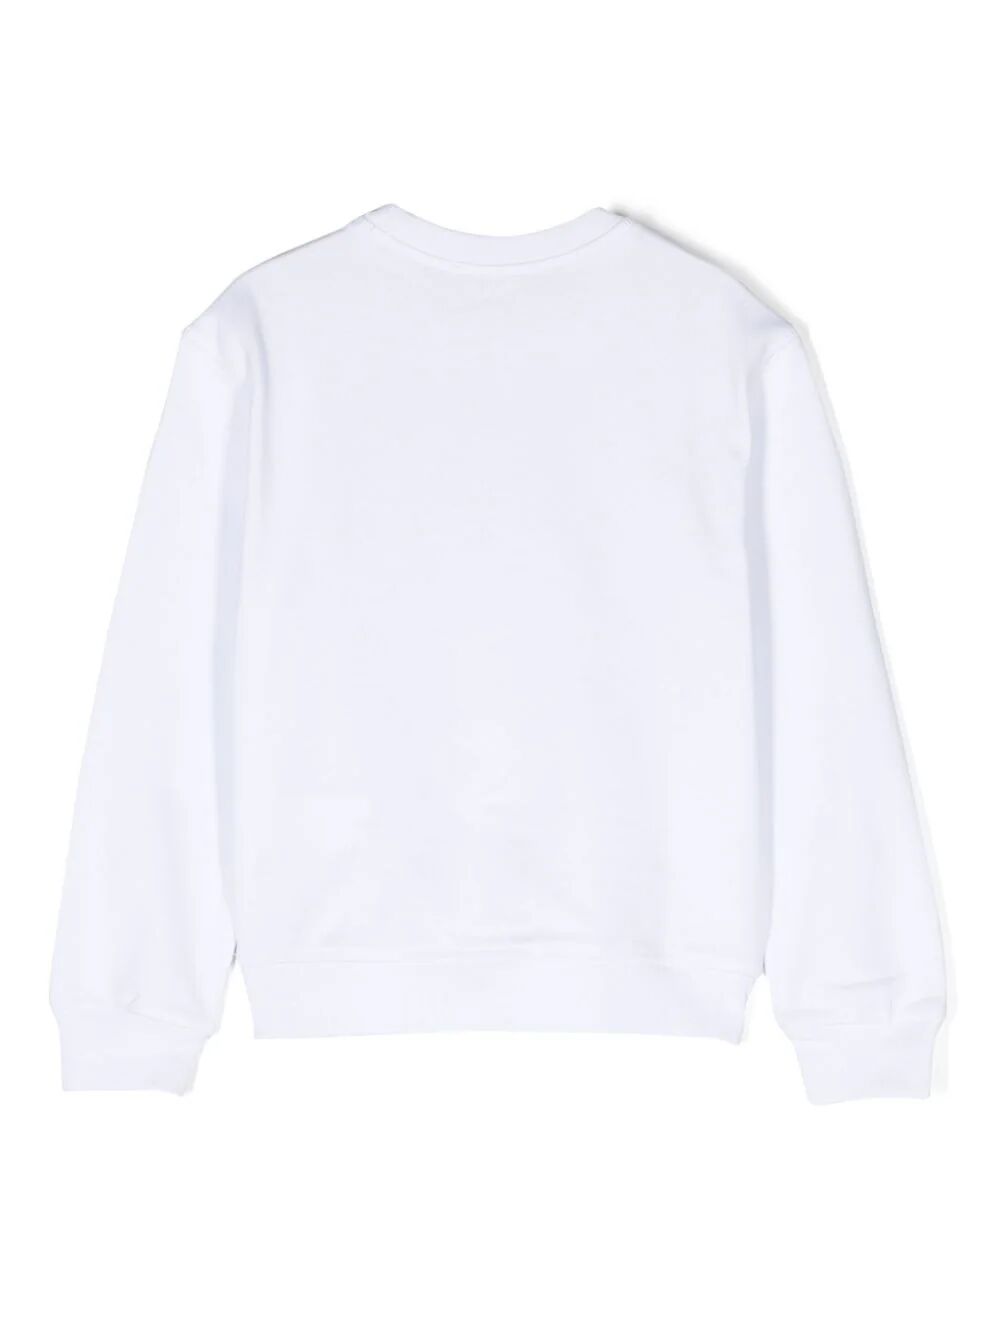 D2s776u Relax Sweatershirt